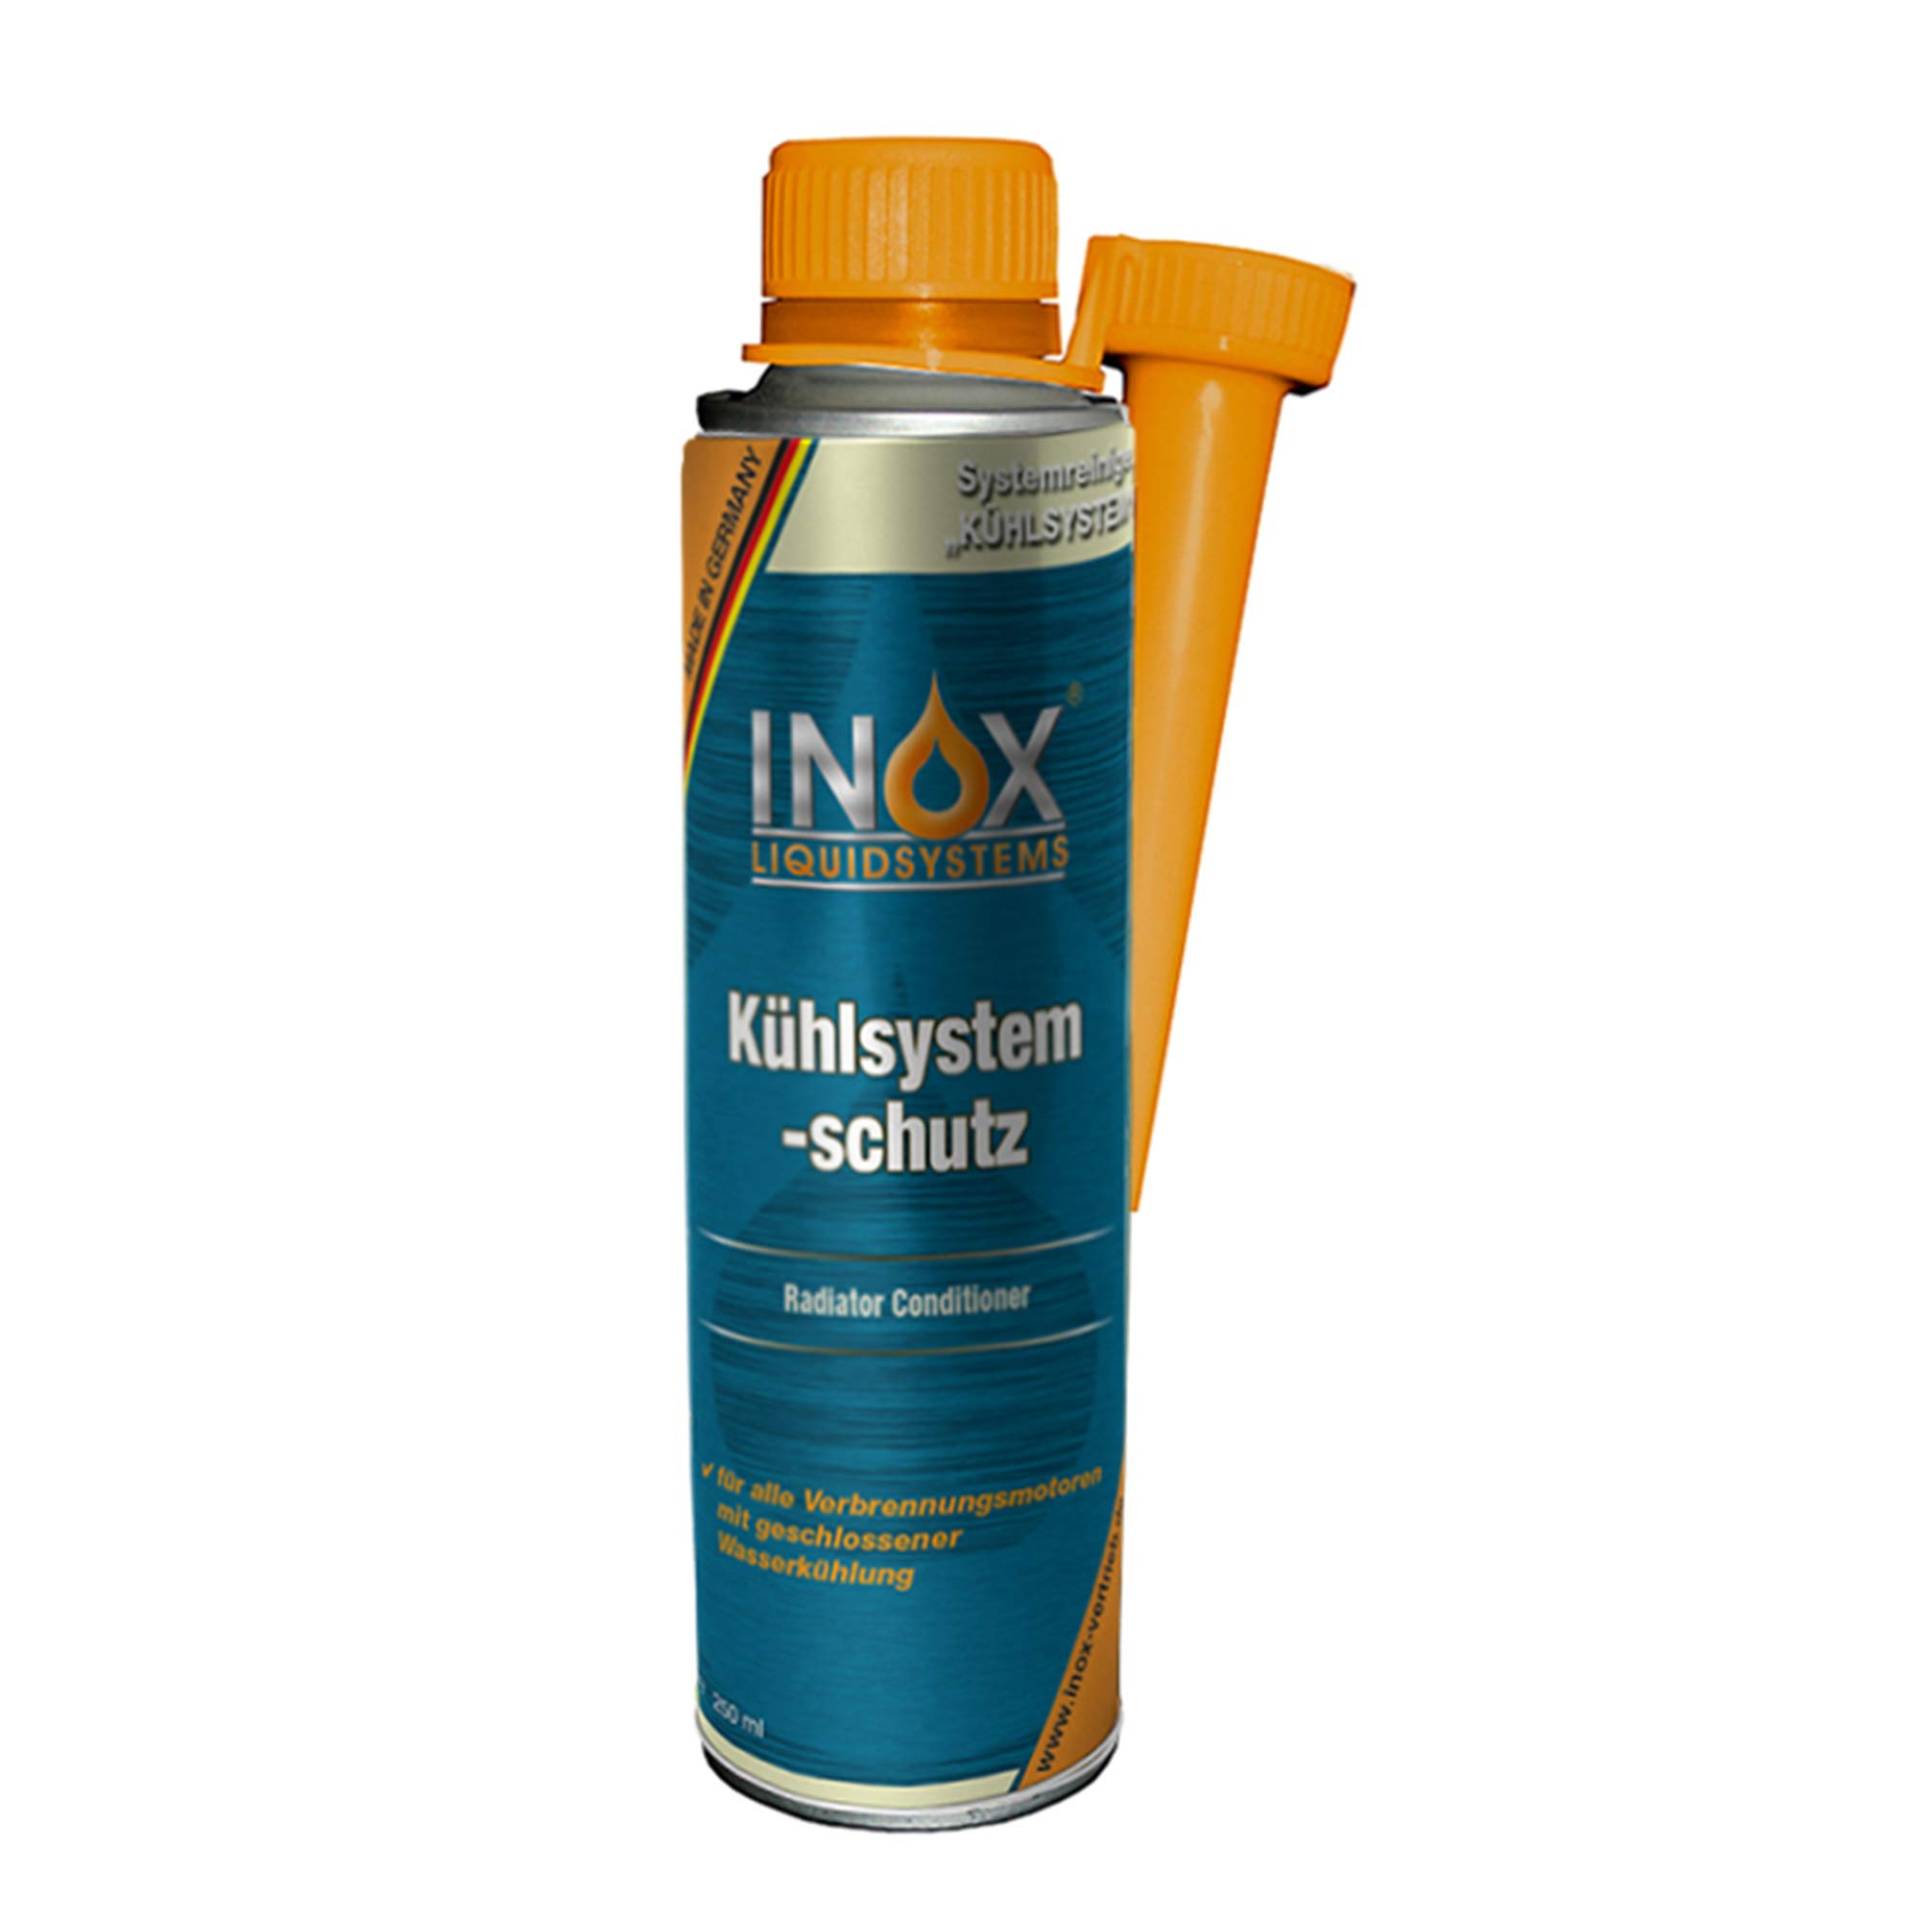 INOX® Kühlsystem Schutz Additiv, 250ml - Kühlerschutz Zusatz für alle Verbrennungsmotoren mit Wasserkühlung geeignet von INOX-LIQUIDSYSTEMS